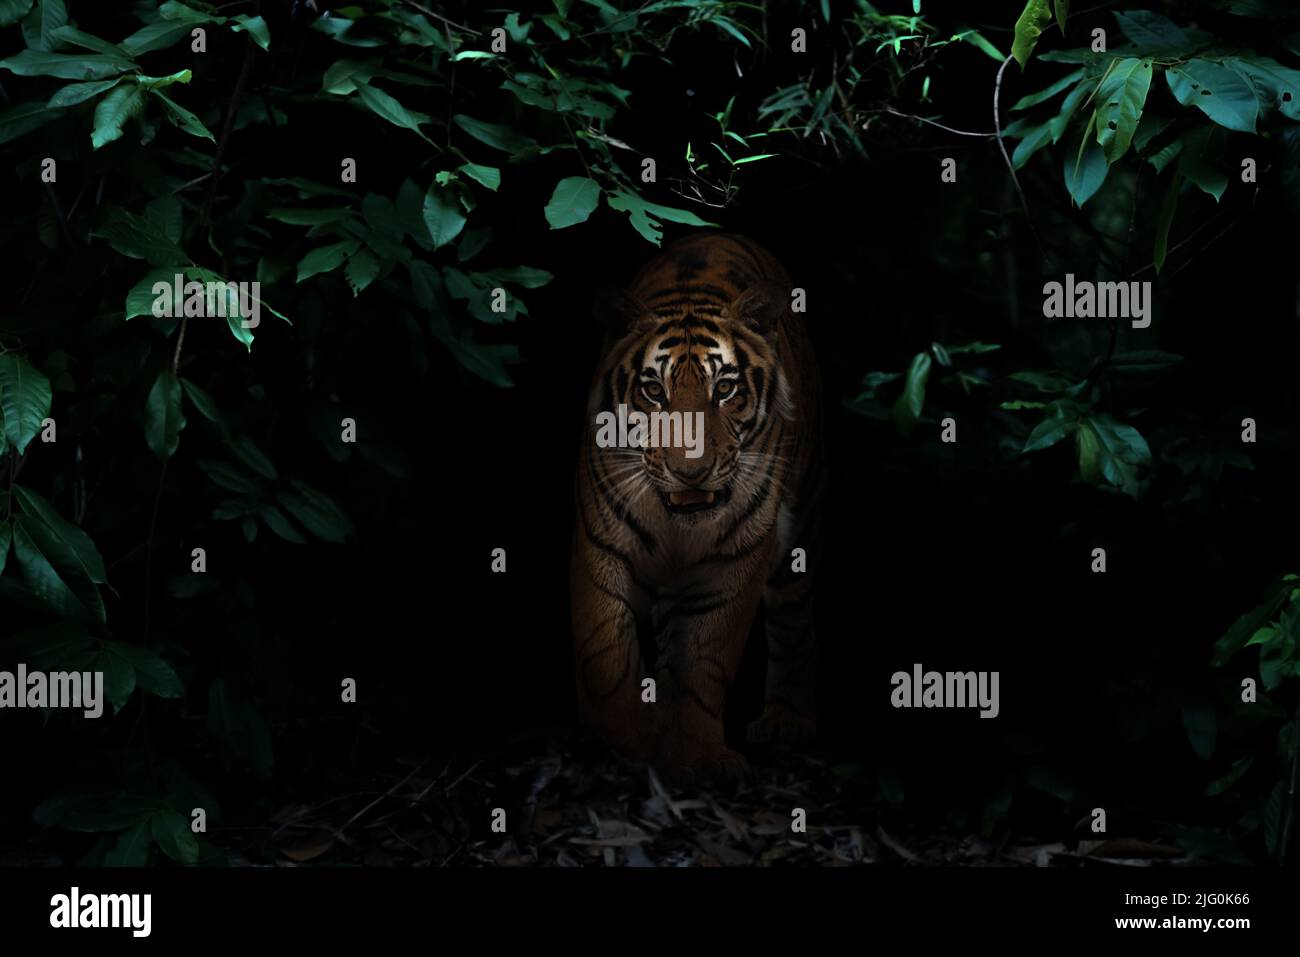 tigre en la selva tropical por la noche fondo oscuro Foto de stock